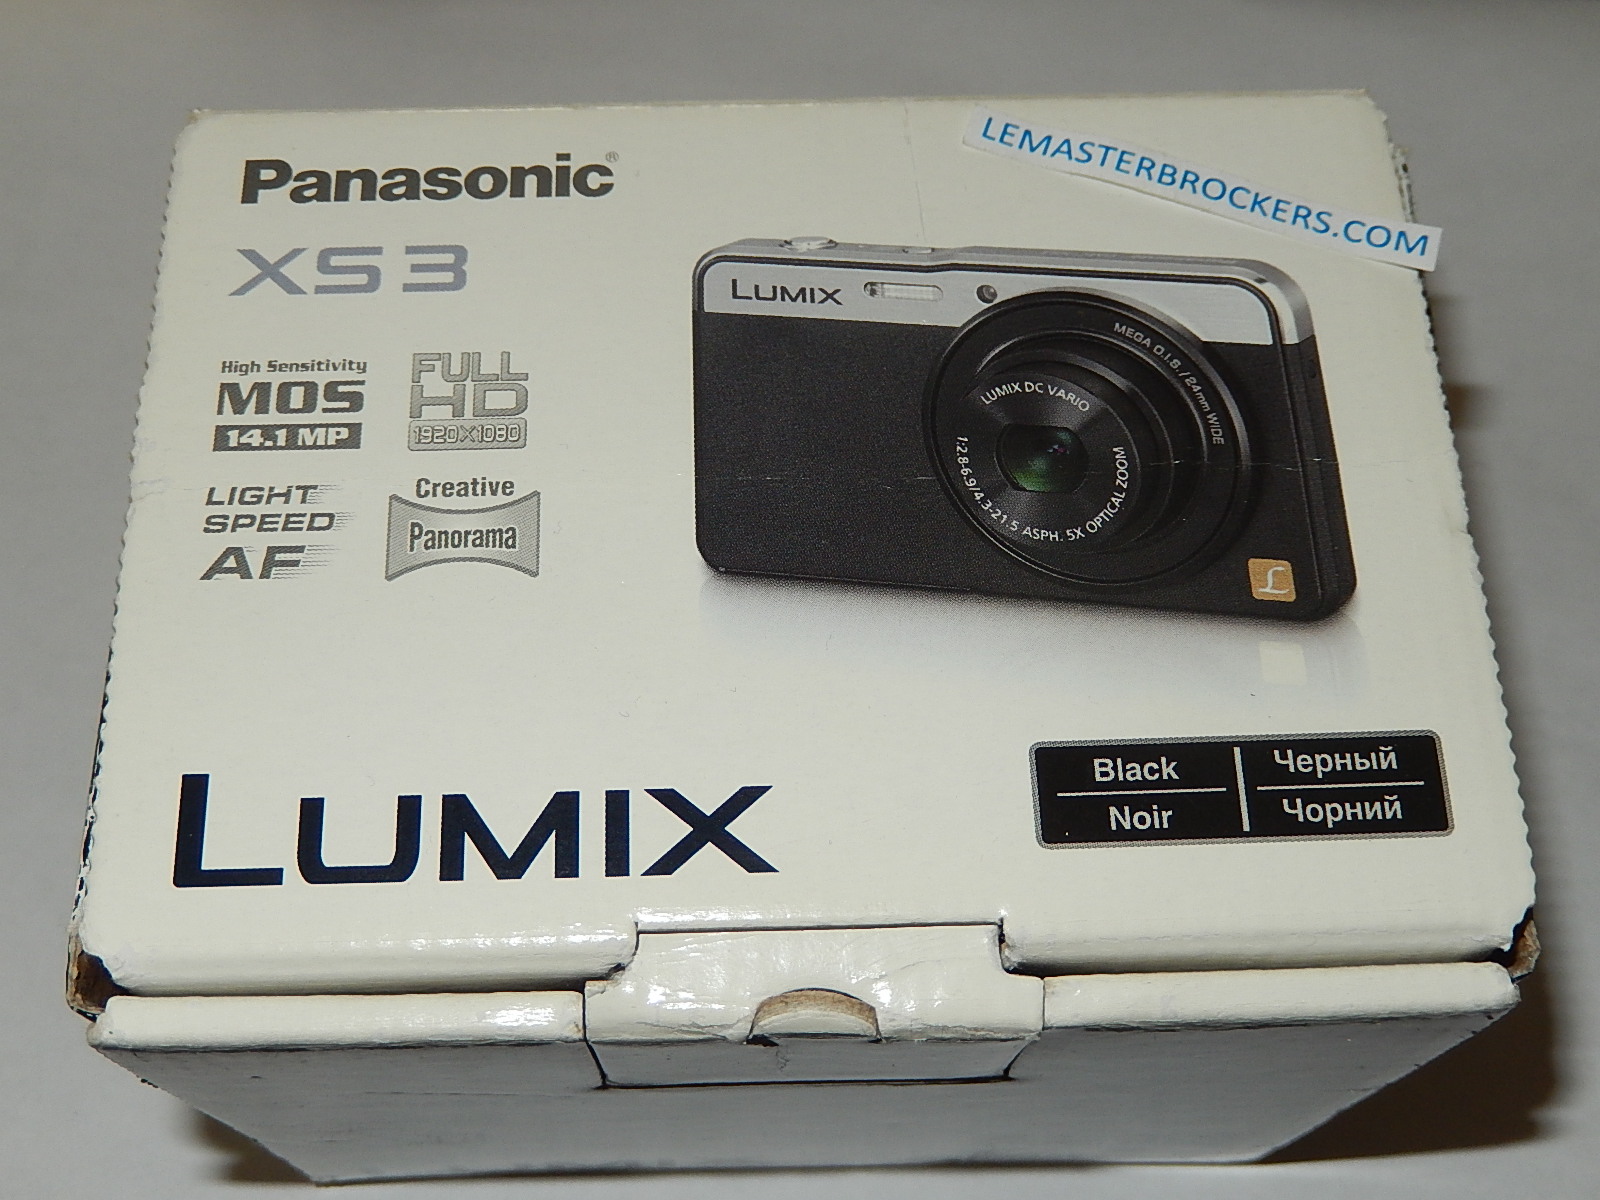 PANASONIC LUMIX XS3 14.1MP ZOOM OPTIQUE 5X FULL HD